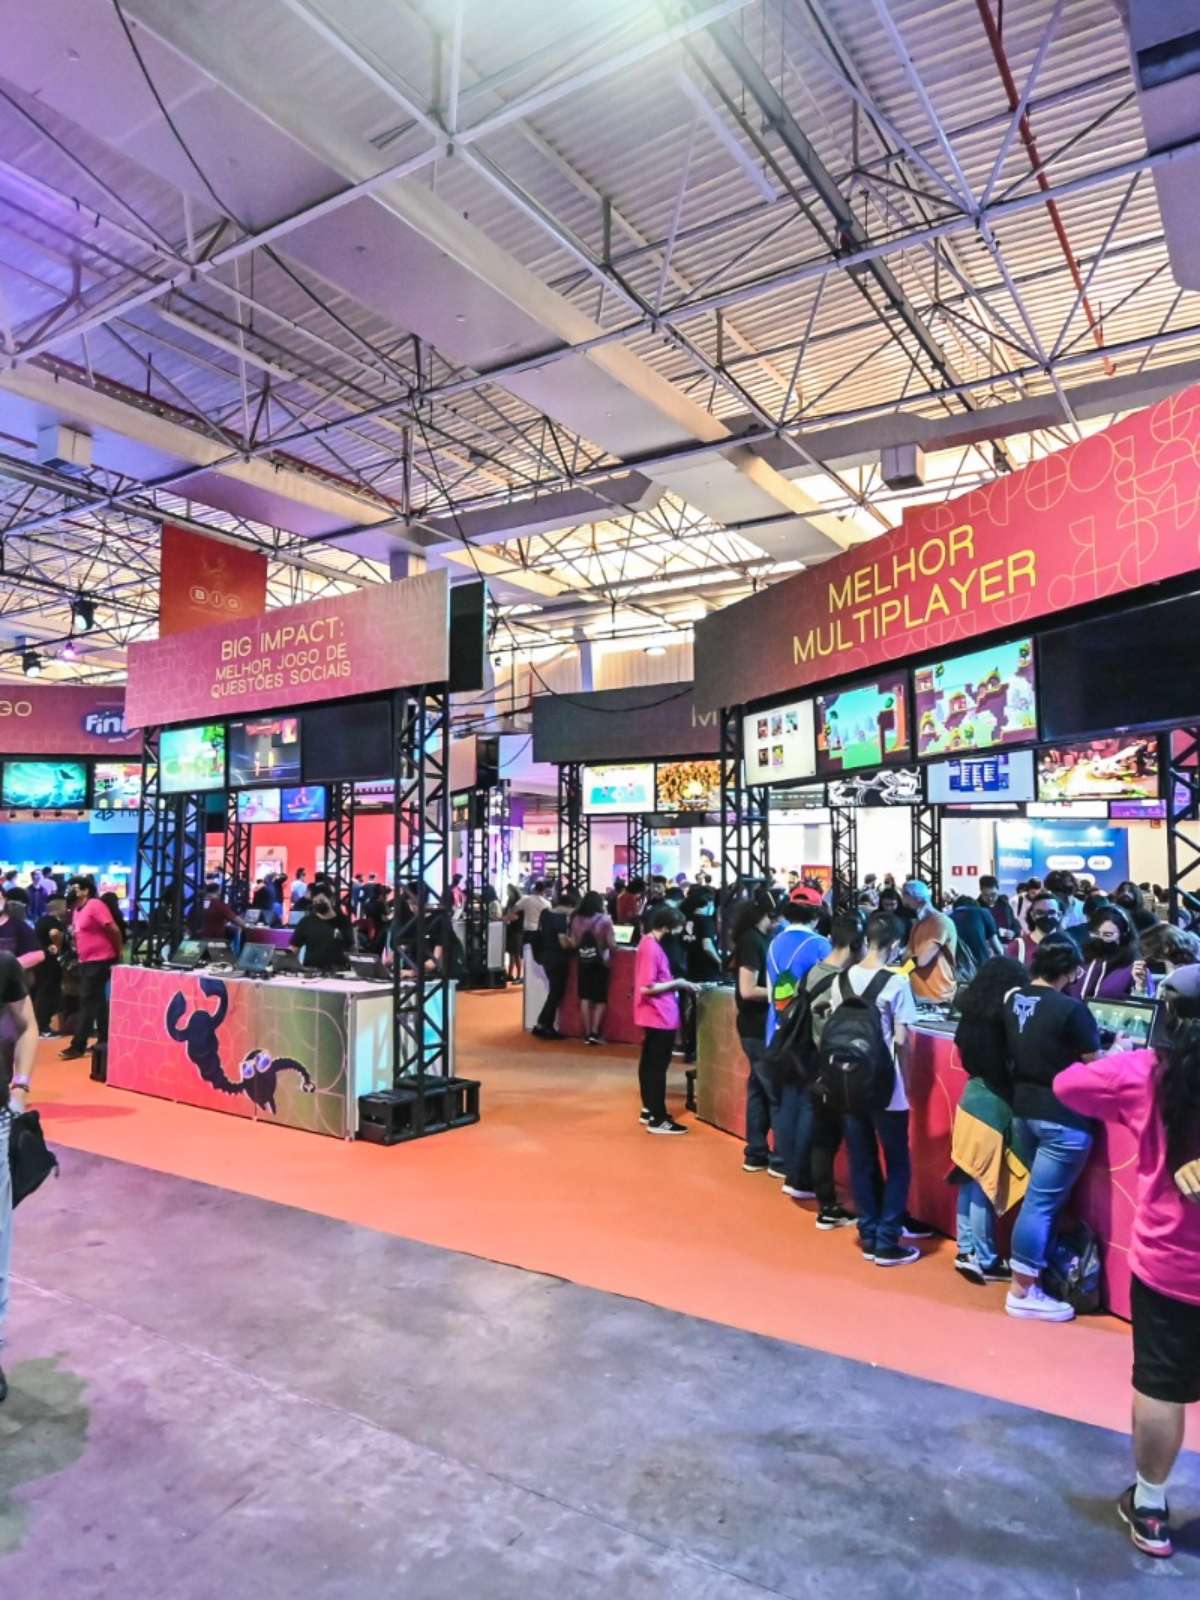 BIG Festival 2019 reúne mercado de games independentes - Revista